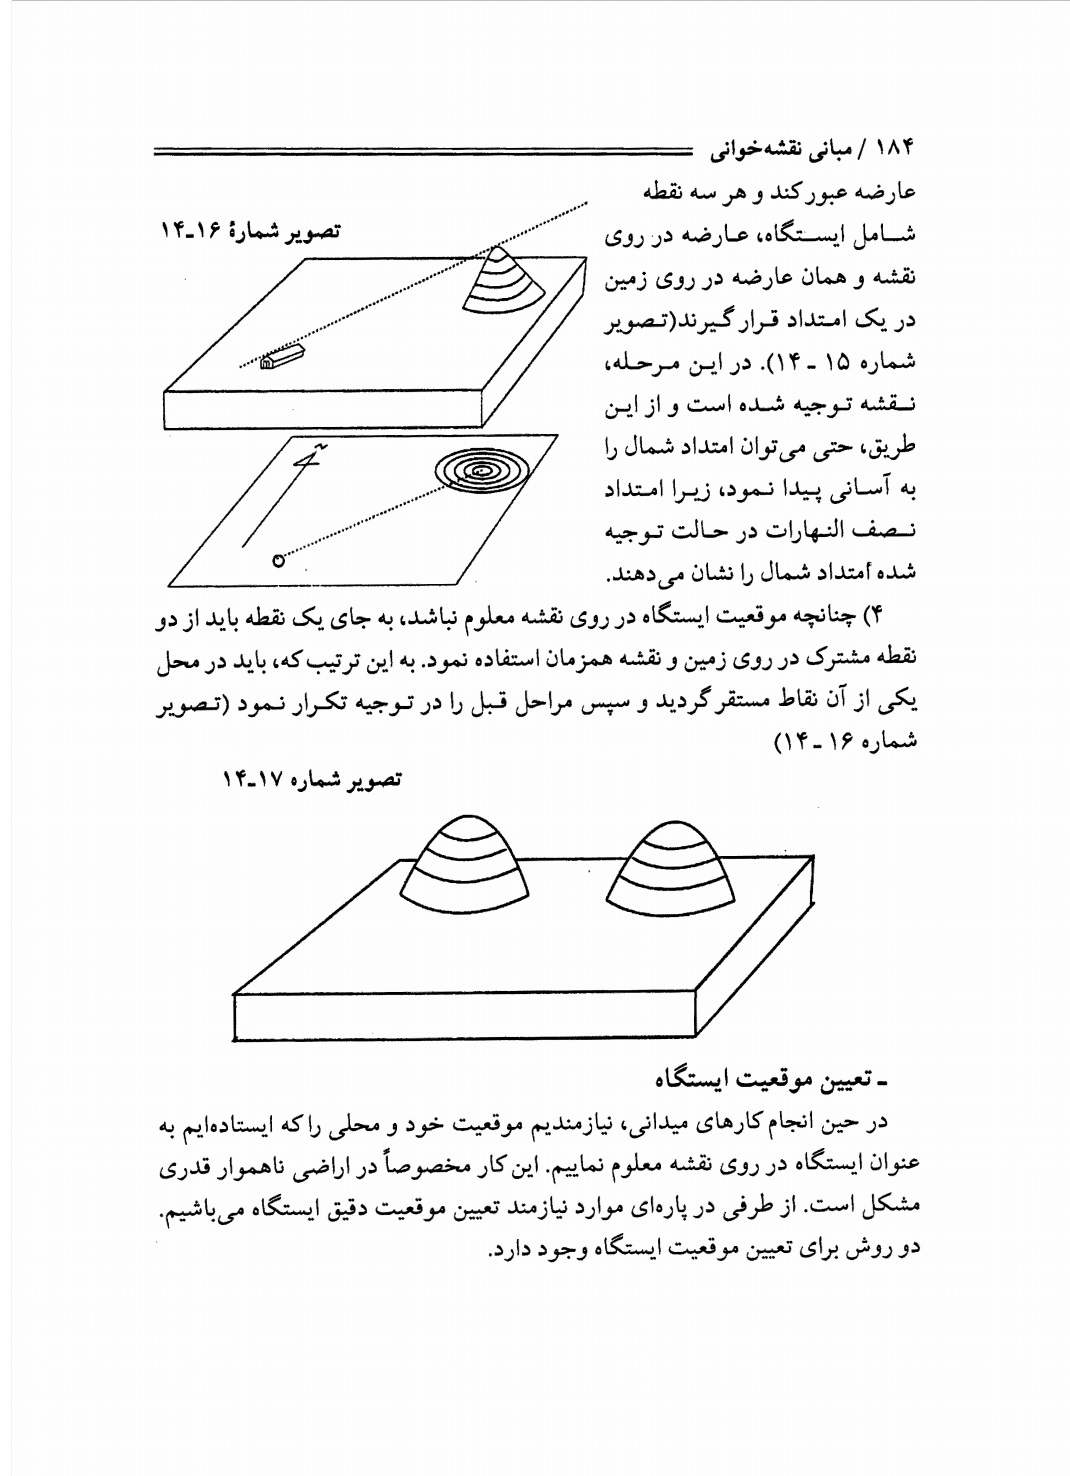 دانلود پی دی اف کتاب مبانی نقشه خوانی از مجتبی یمانی - 194 صفحه PDF